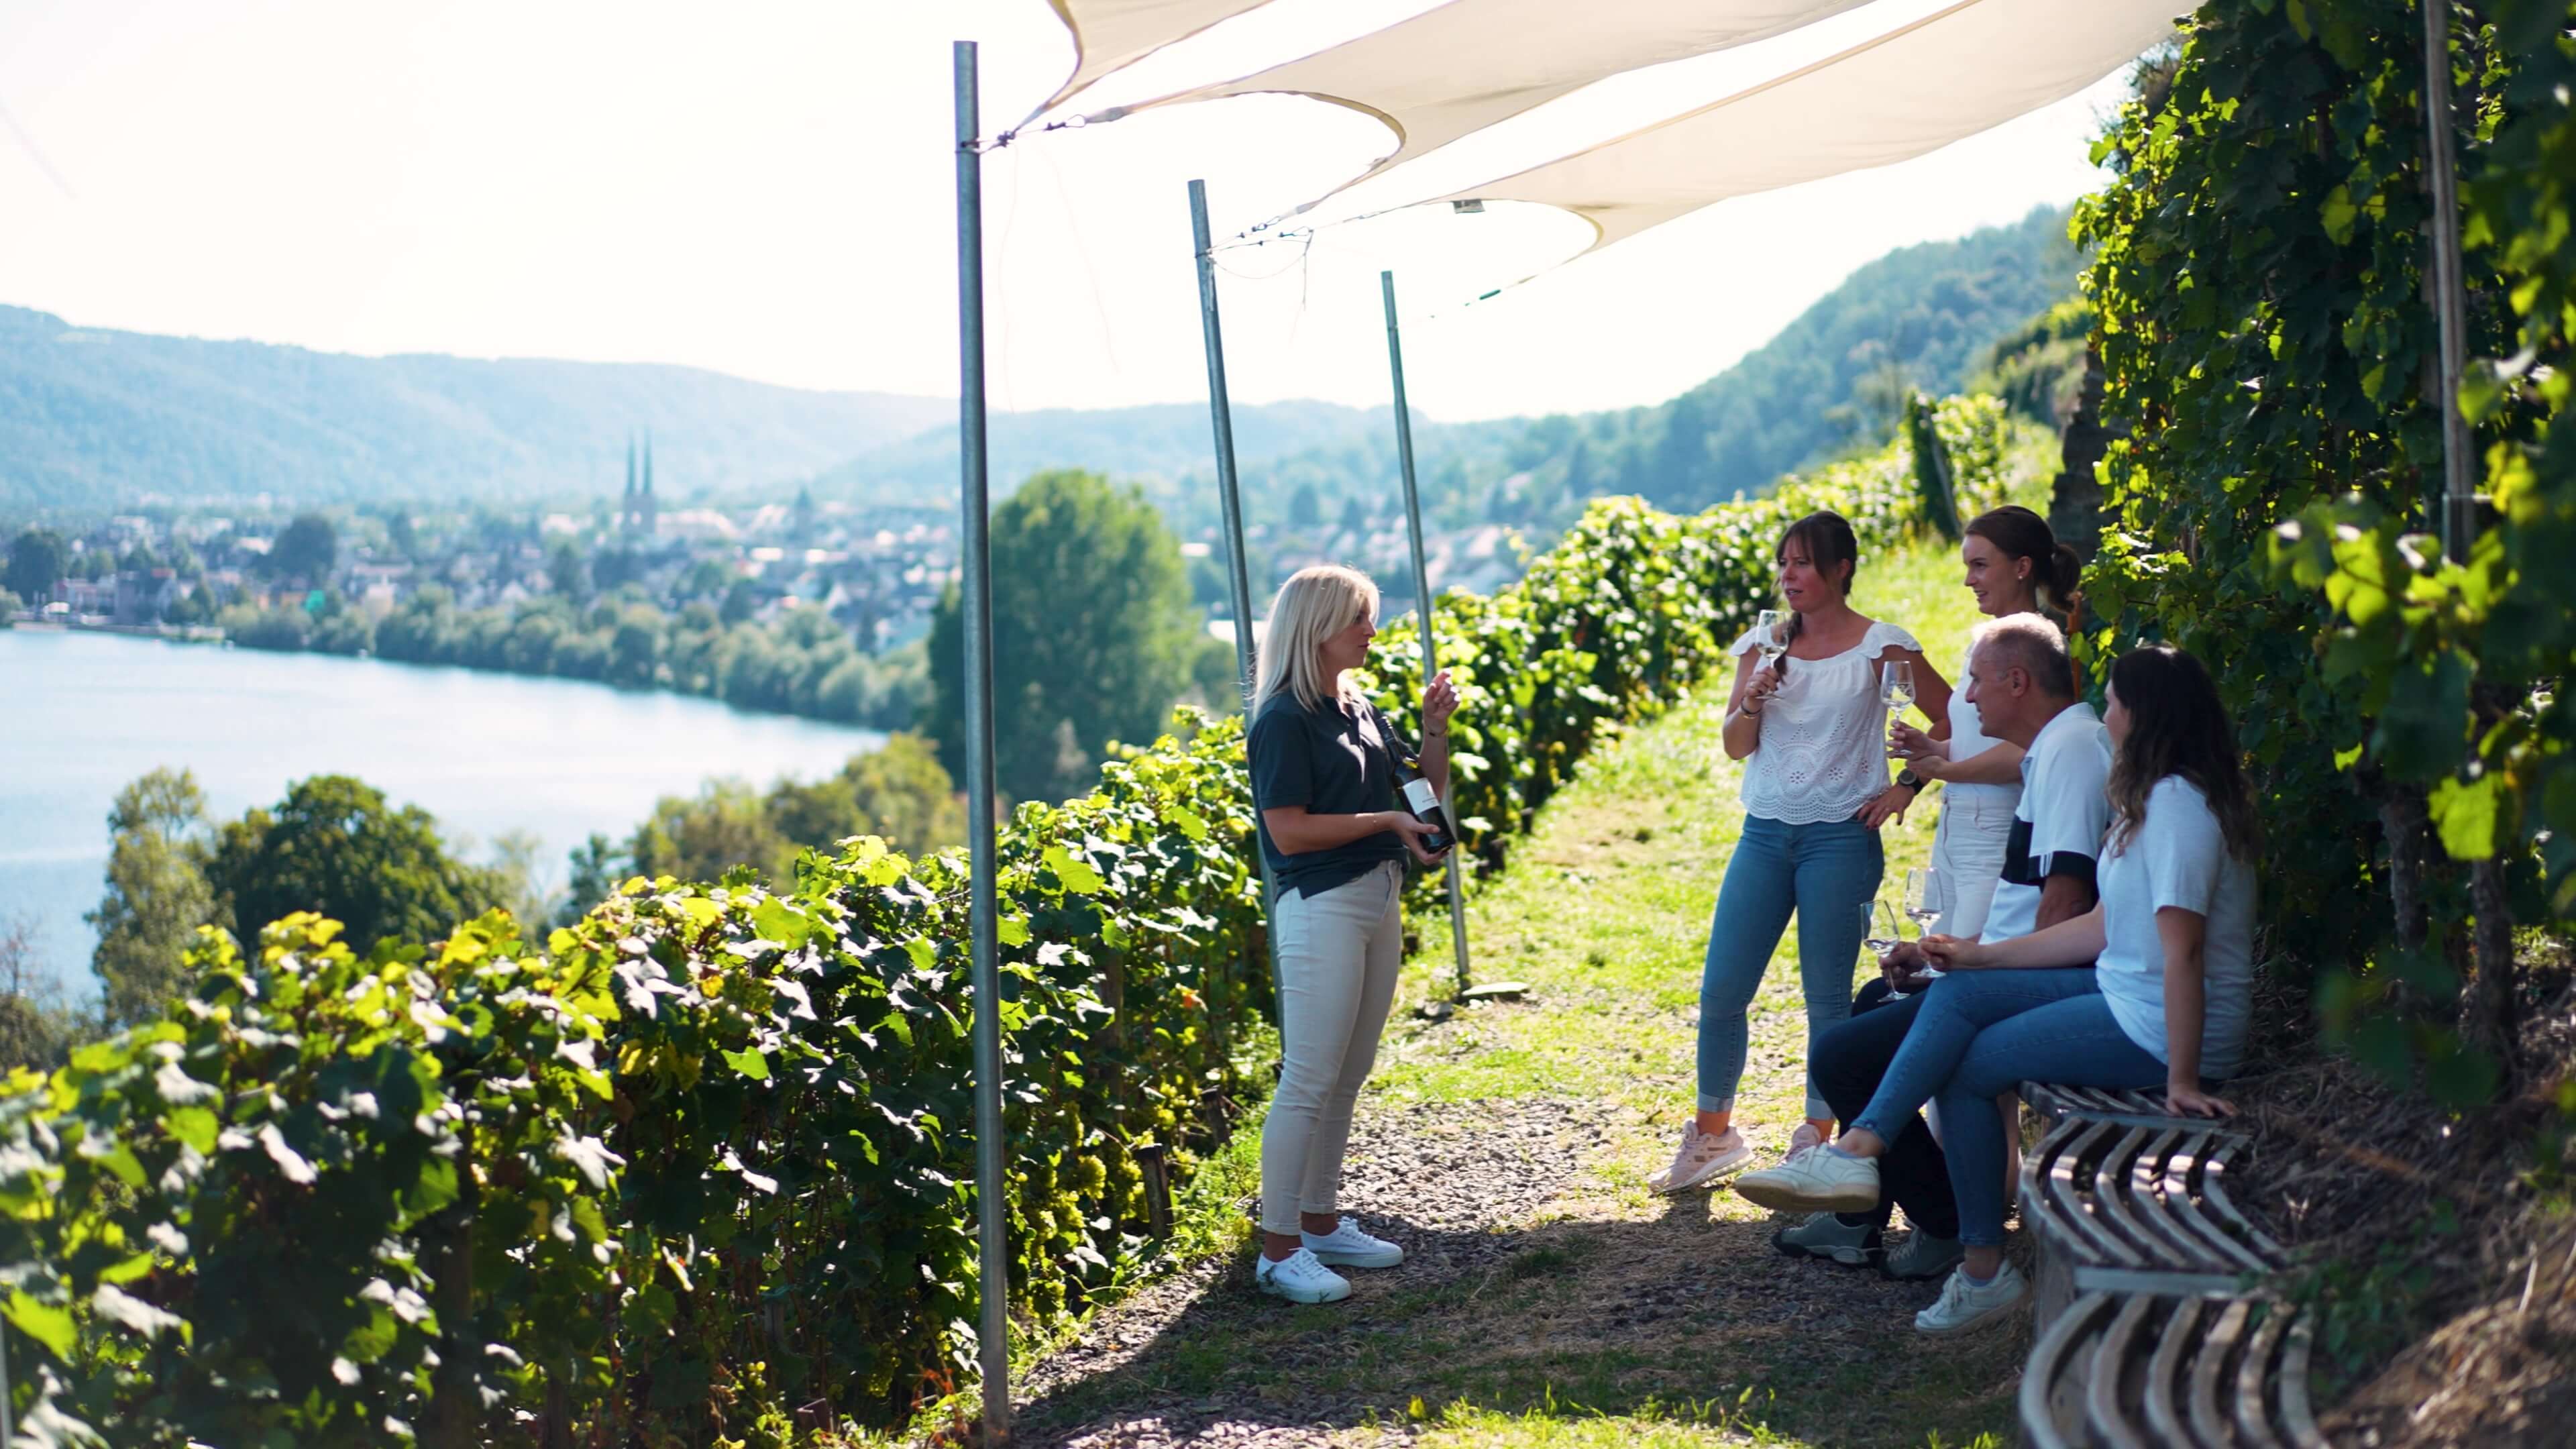 Tourguide erklärt Wein während der Amreinbergtour an Gäste mit Blick auf den Weinberg und Mosel im Koblenzer Marienberg vom Weingut Schwaab